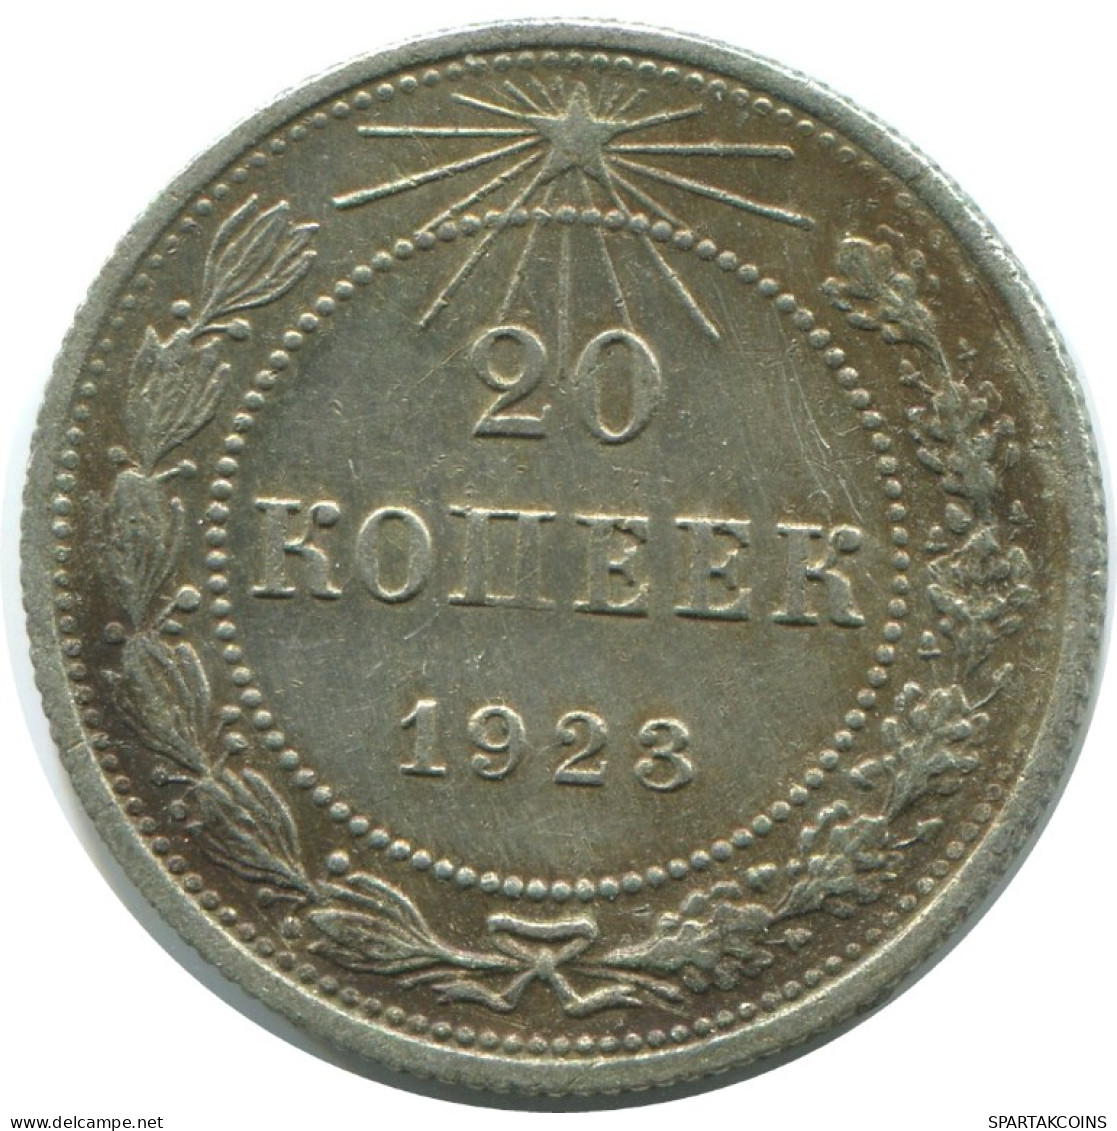 20 KOPEKS 1923 RUSIA RUSSIA RSFSR PLATA Moneda HIGH GRADE #AF544.4.E.A - Russland